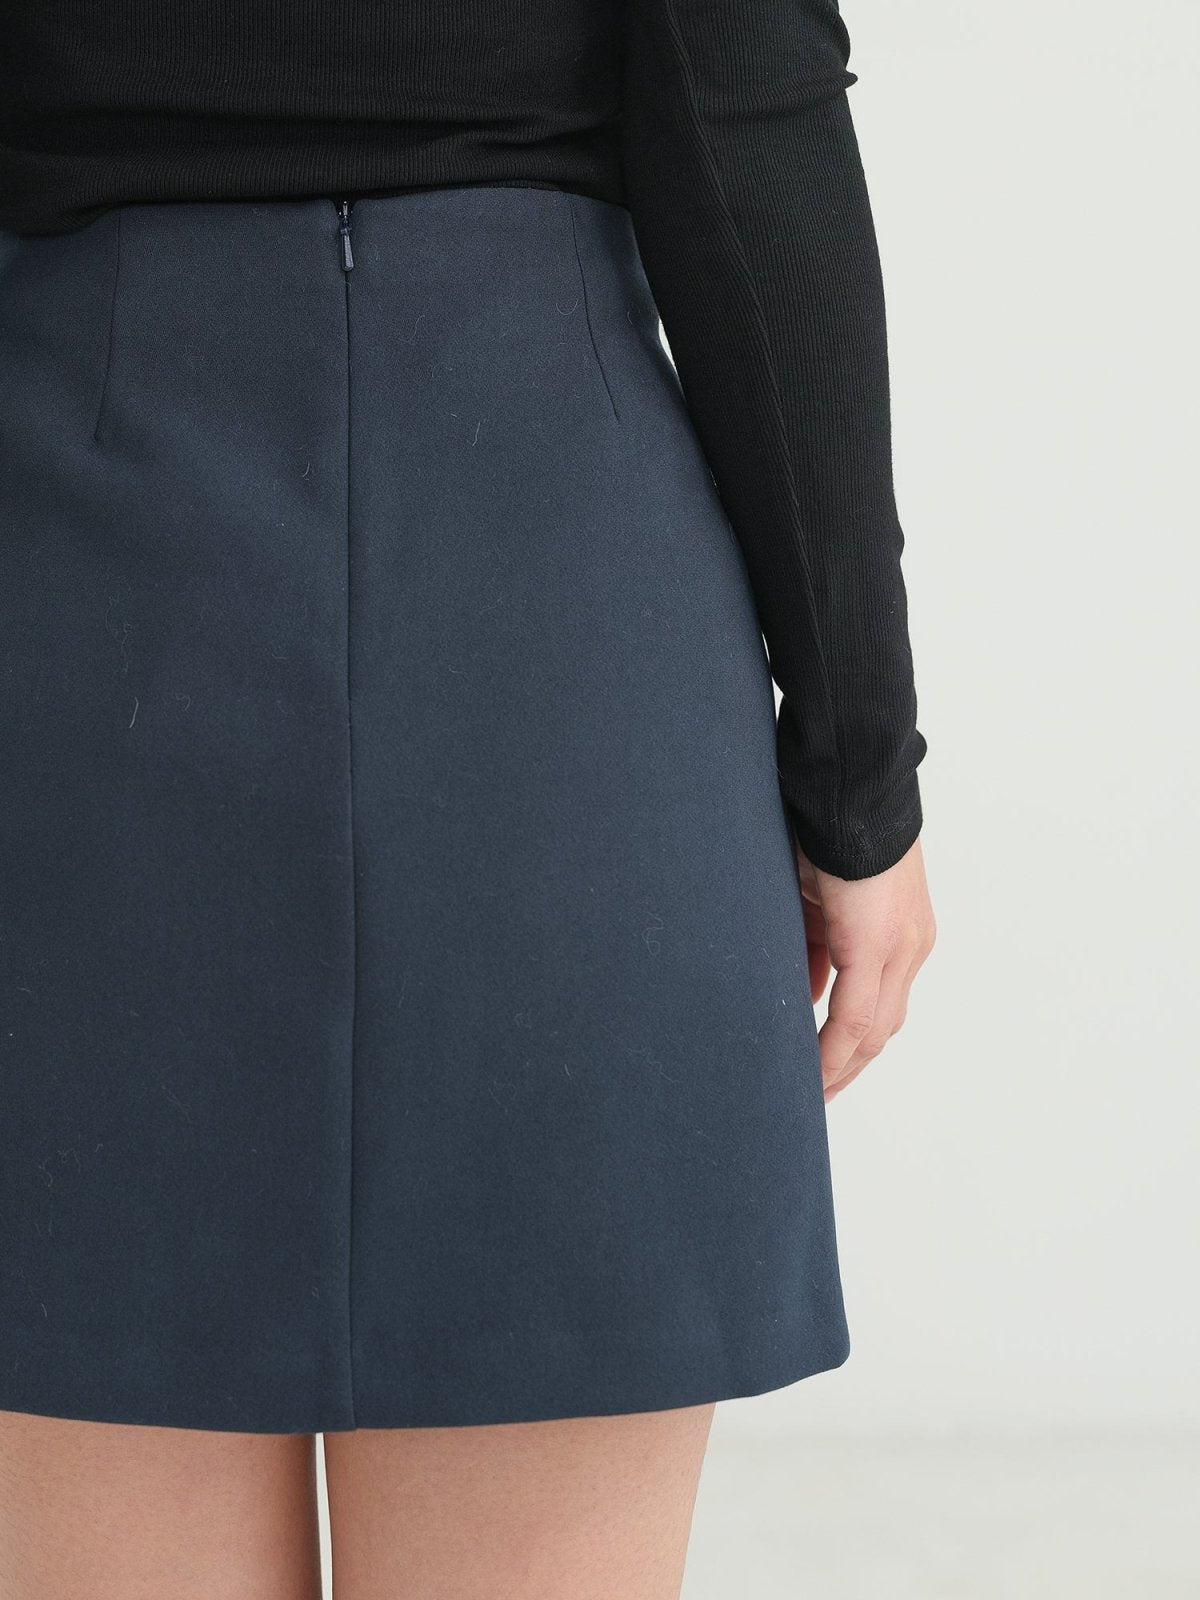 Winter A-line Skirt - DAG-DD1321-23NavyTealS - Navy Teal - S - D'zage Designs